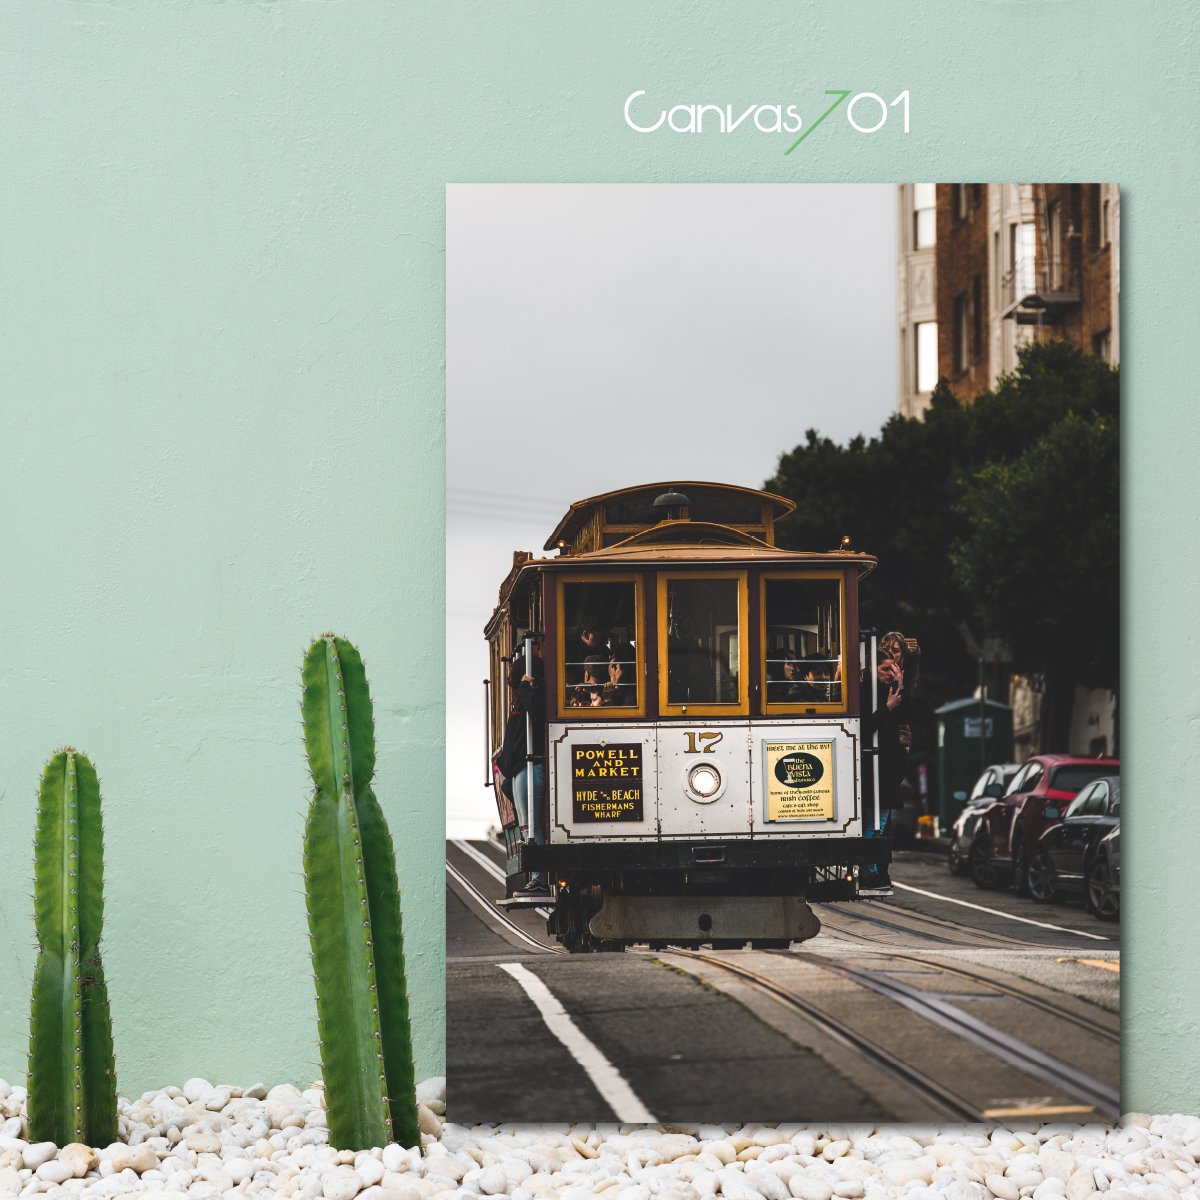 Market701 | Portekiz Tramvay Kanvas Tablo 